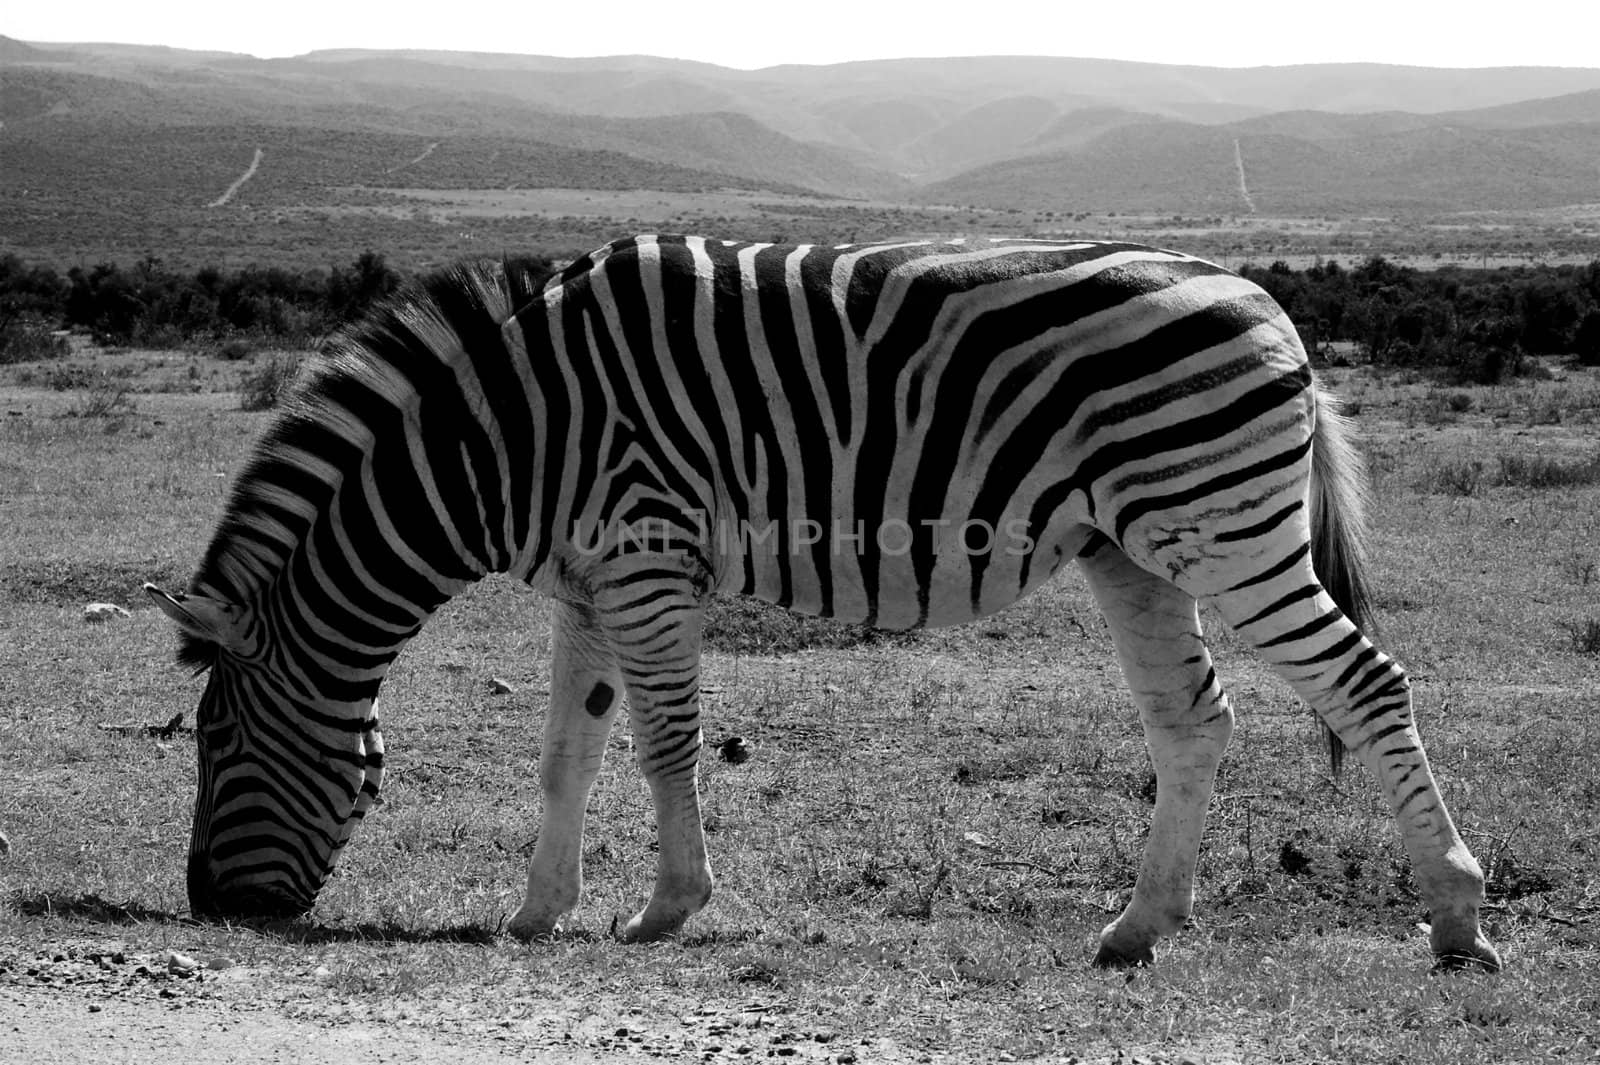 Zebra Feeding by nightowlza